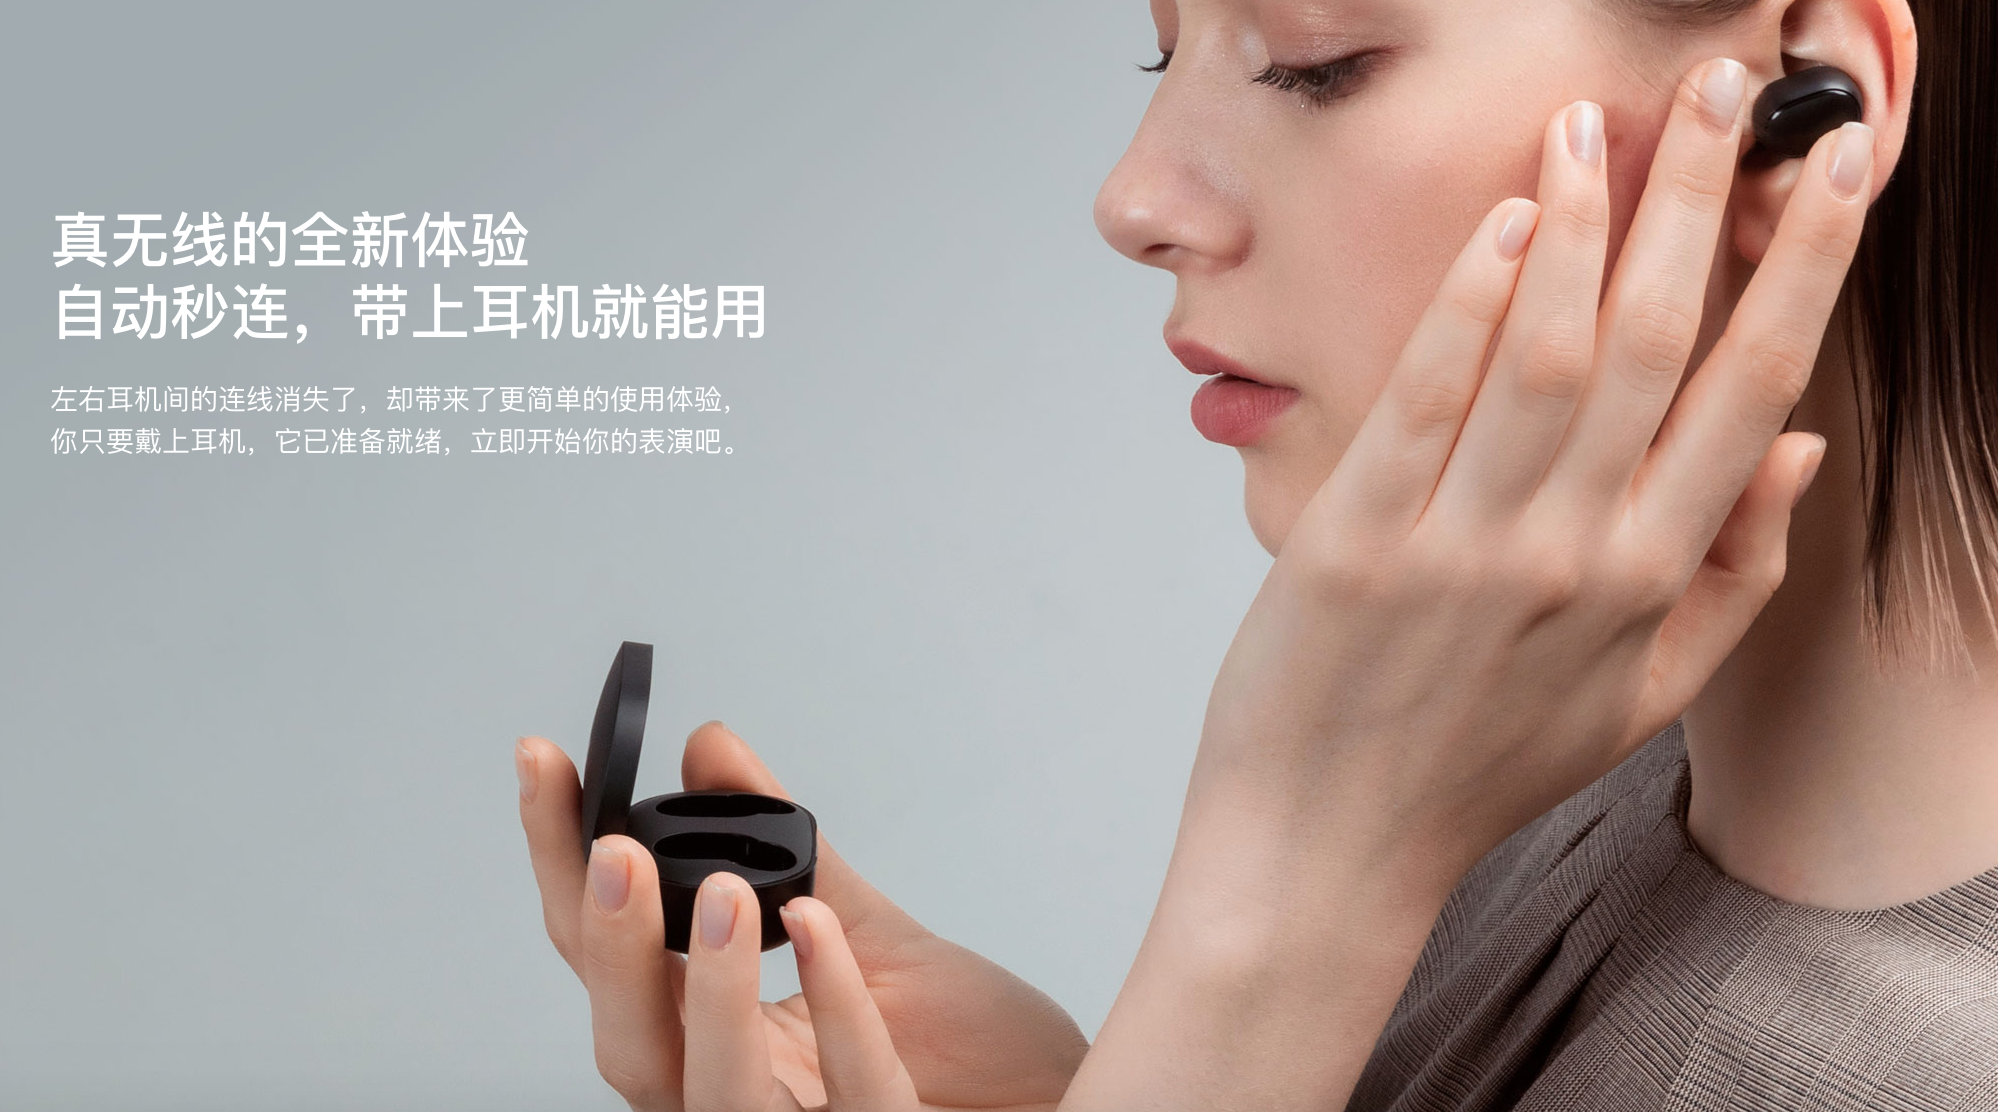 Xiaomi lanza los audÃ­fonos inalÃ¡mbricos mÃ¡s baratos del